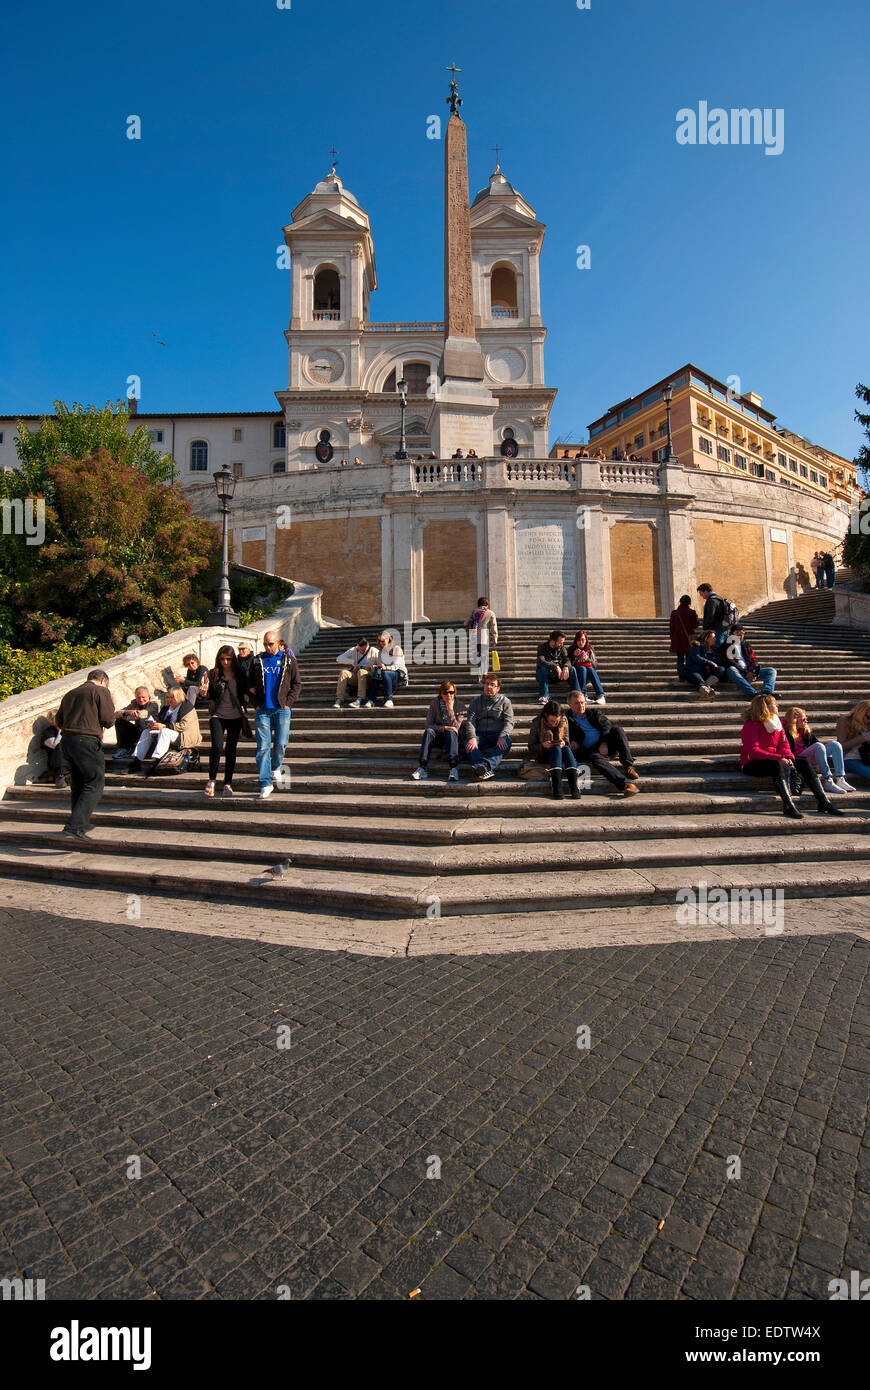 Trinità dei Monti staircase and church, Piazza di Spagna, Rome, Italy Stock Photo